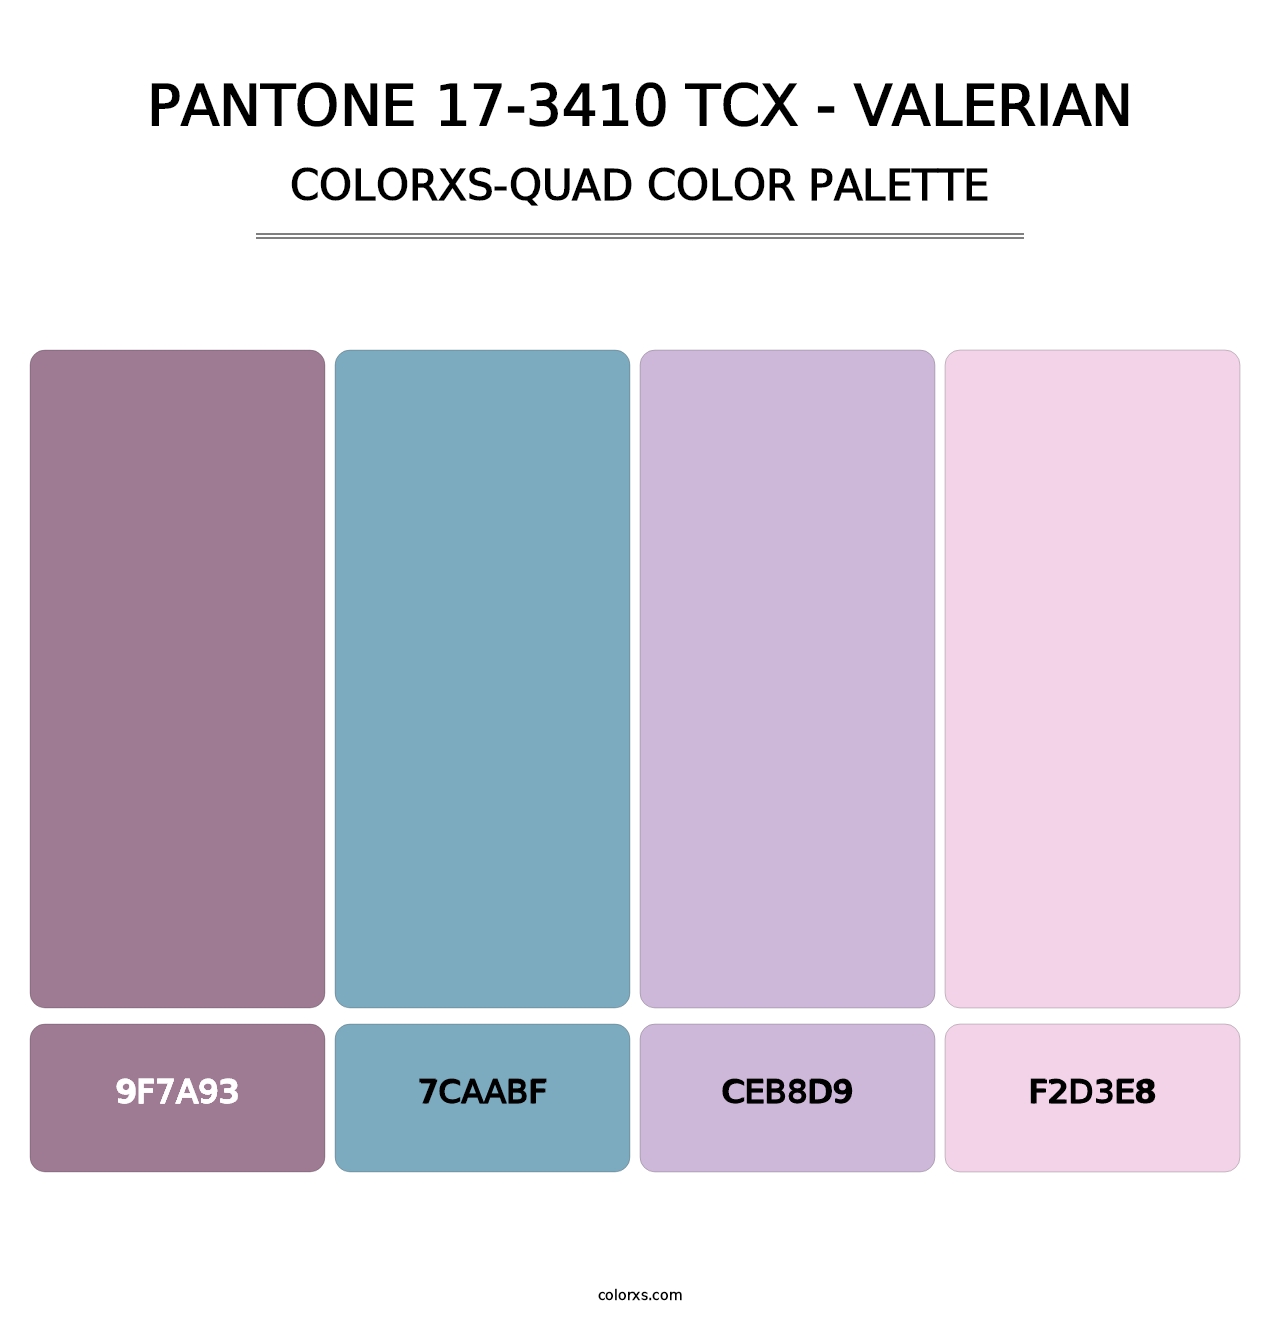 PANTONE 17-3410 TCX - Valerian - Colorxs Quad Palette